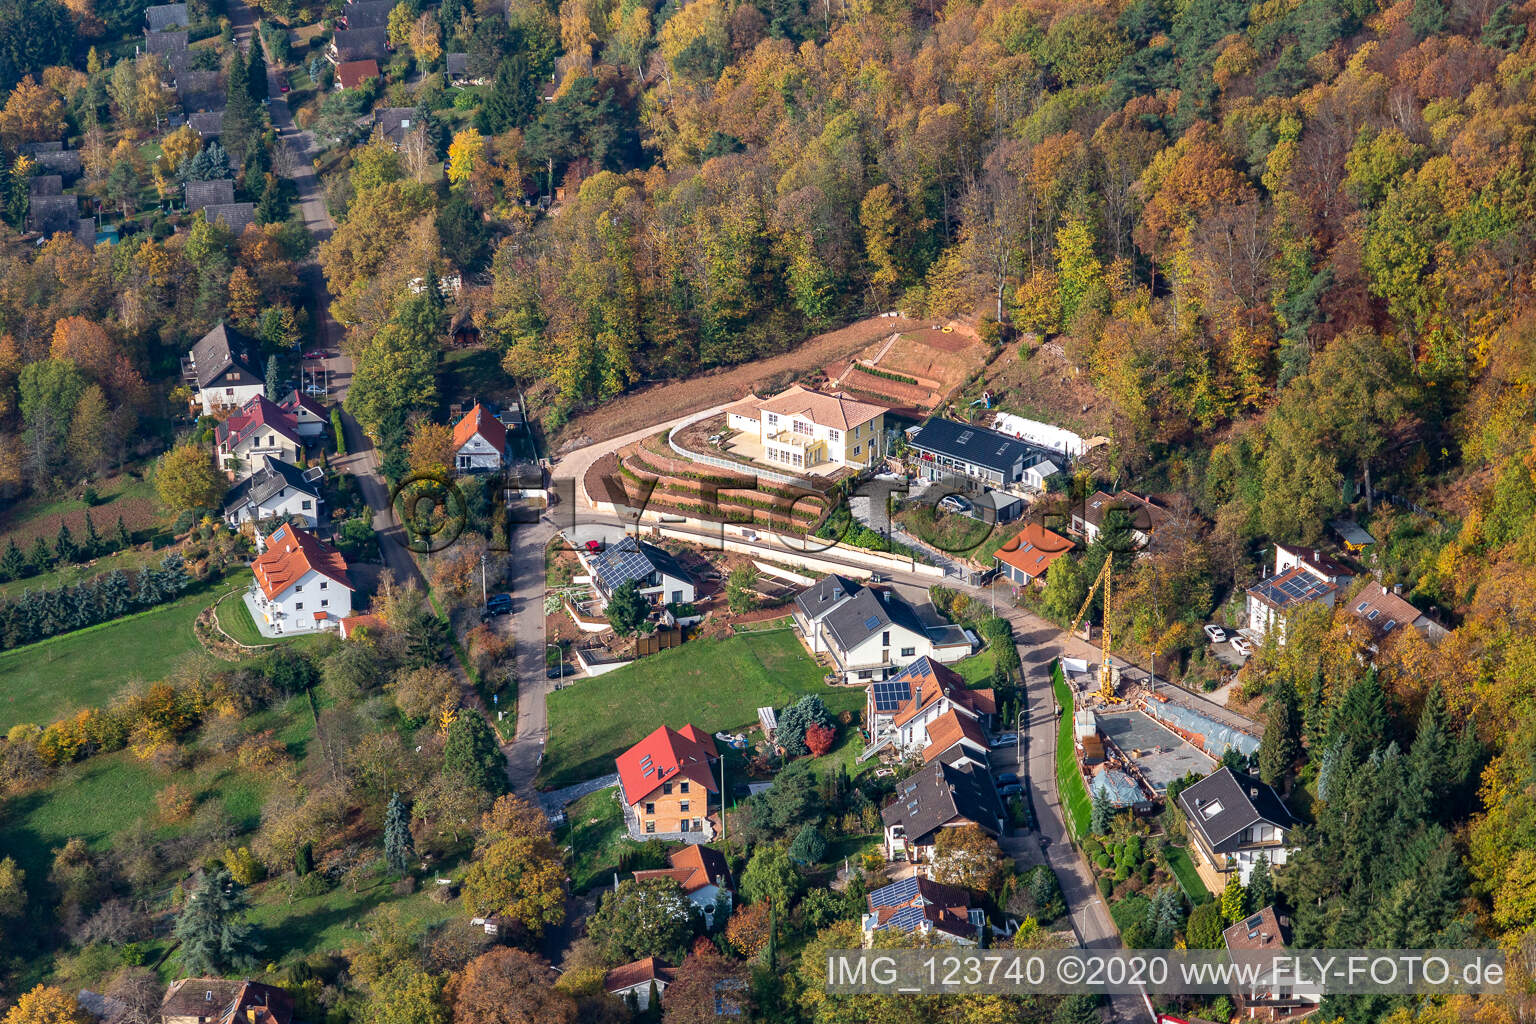 Luftbild von Ferienhaus Slevogtstr in Leinsweiler im Bundesland Rheinland-Pfalz, Deutschland